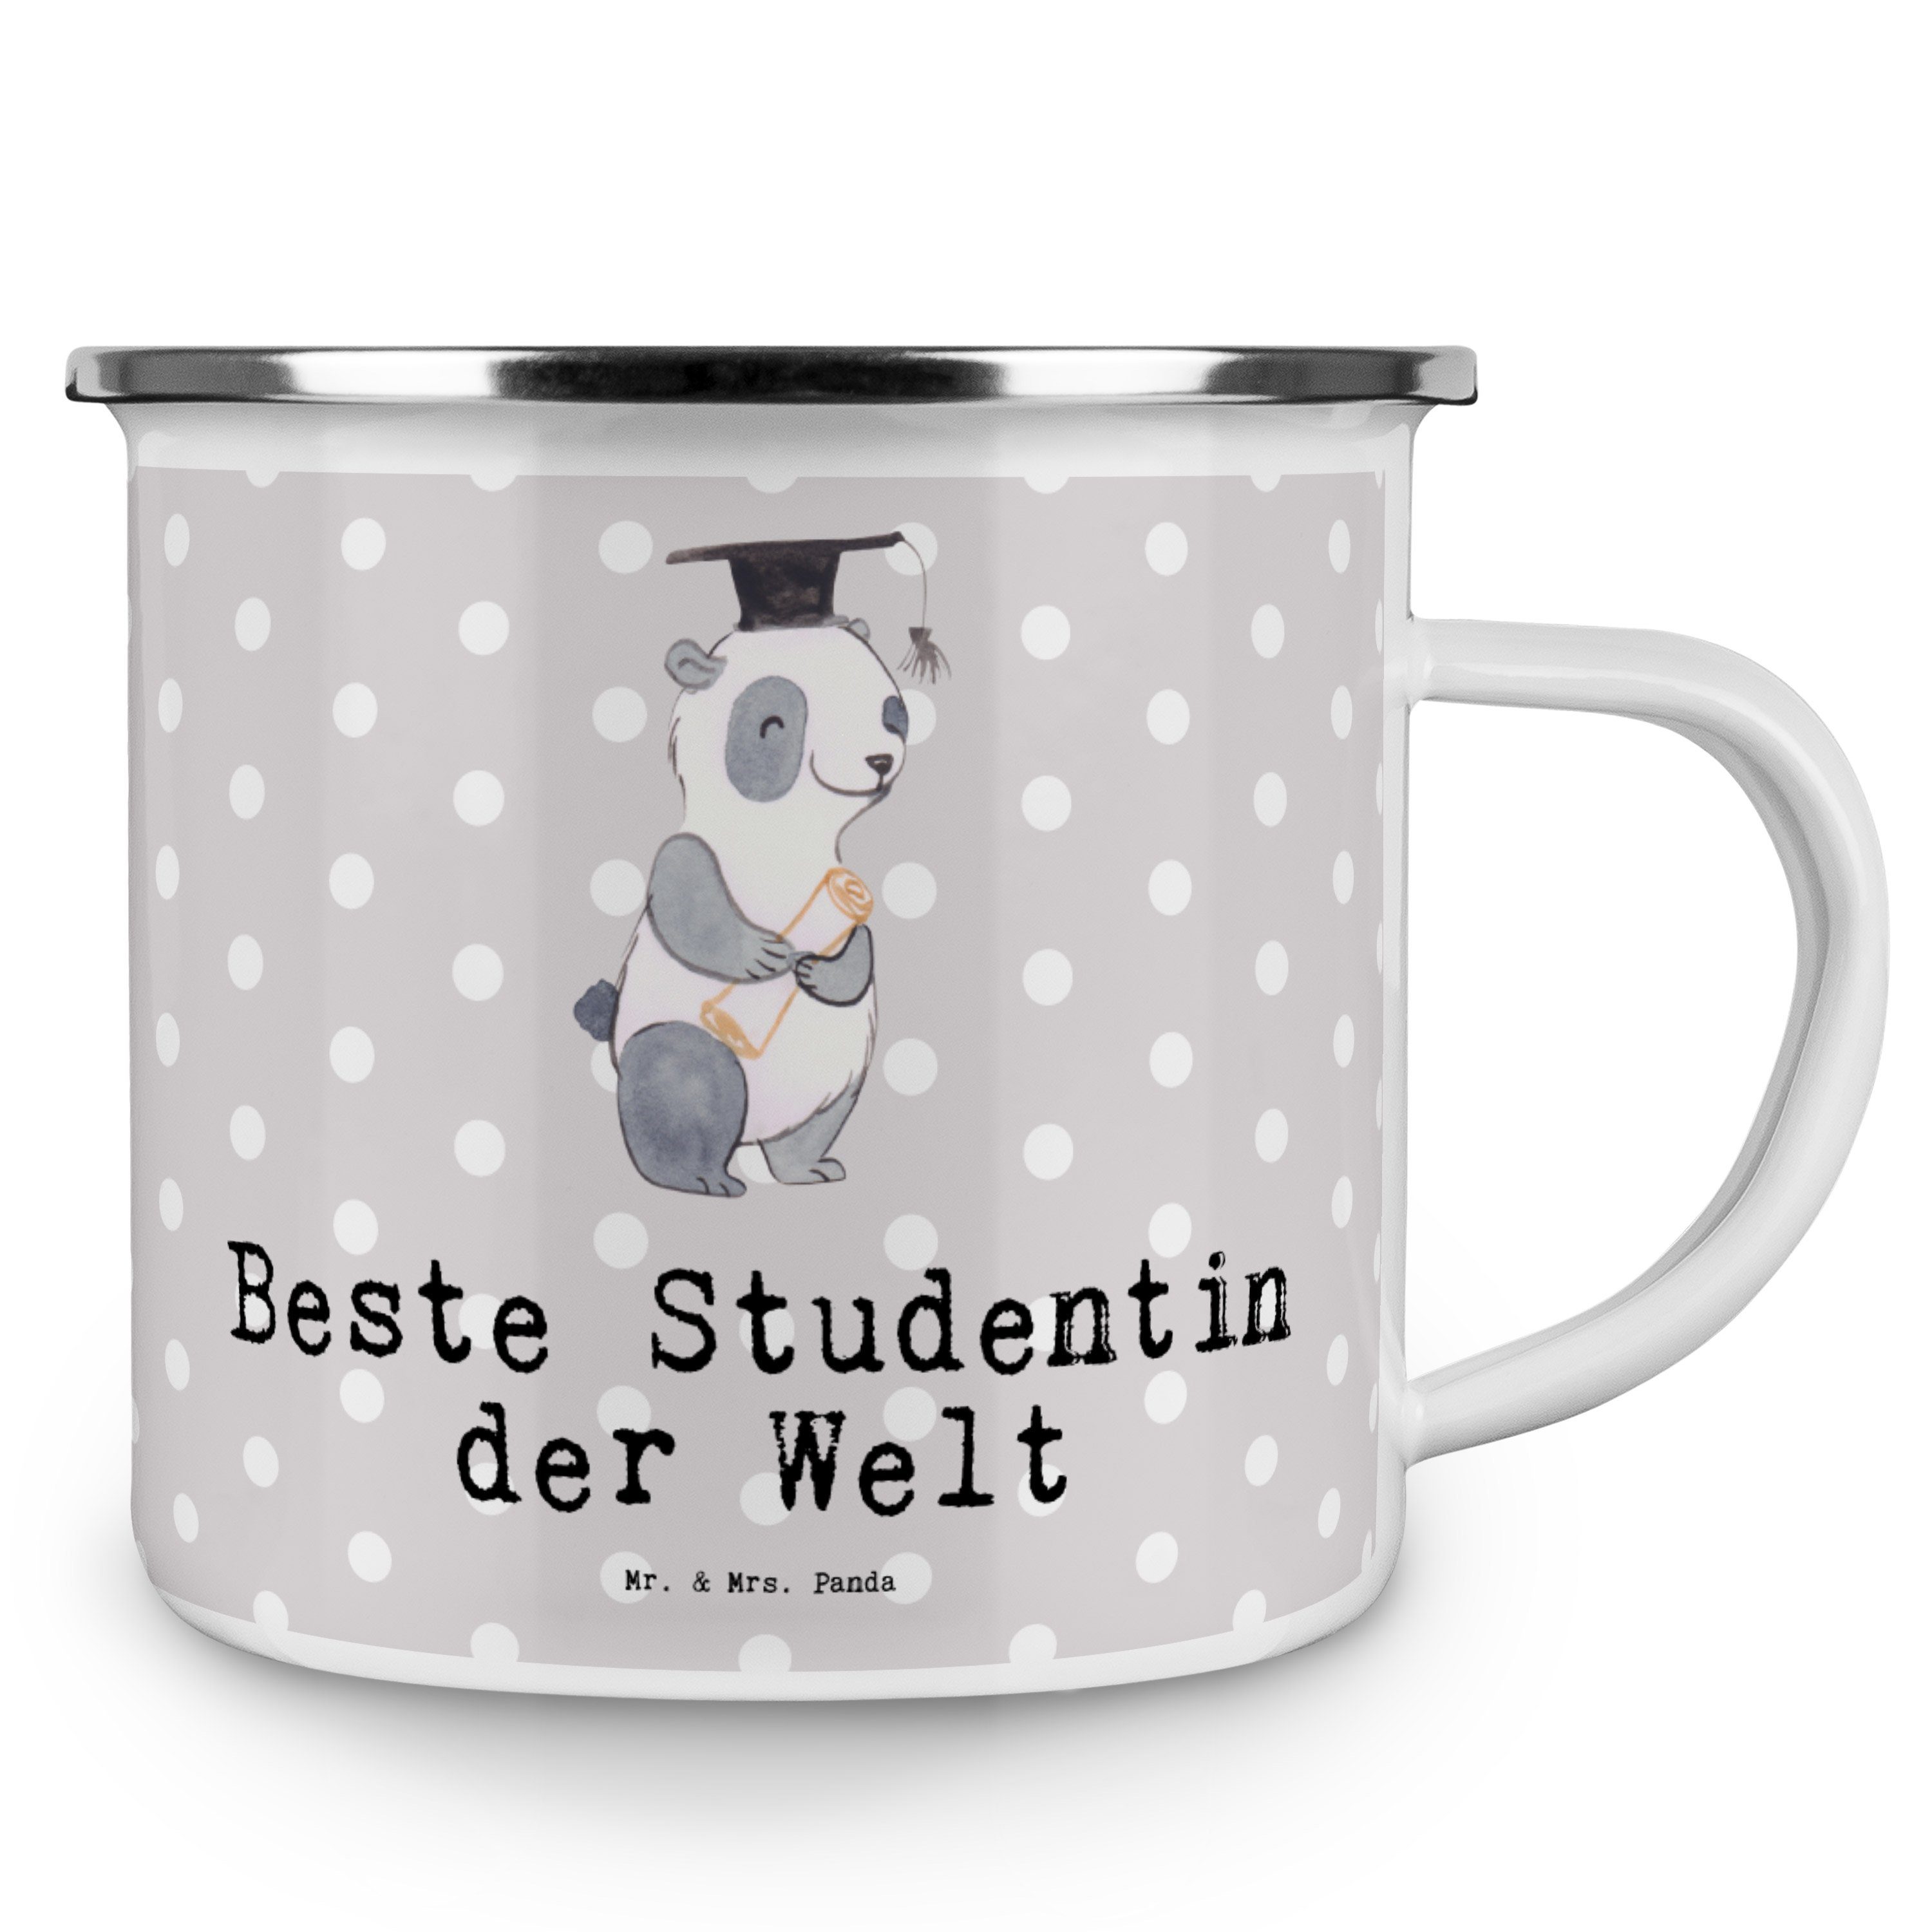 Mr. & Mrs. Panda der Becher Beste Emaille Trinkbecher, Geschenk, Studentin Grau Pastell - Welt Panda 